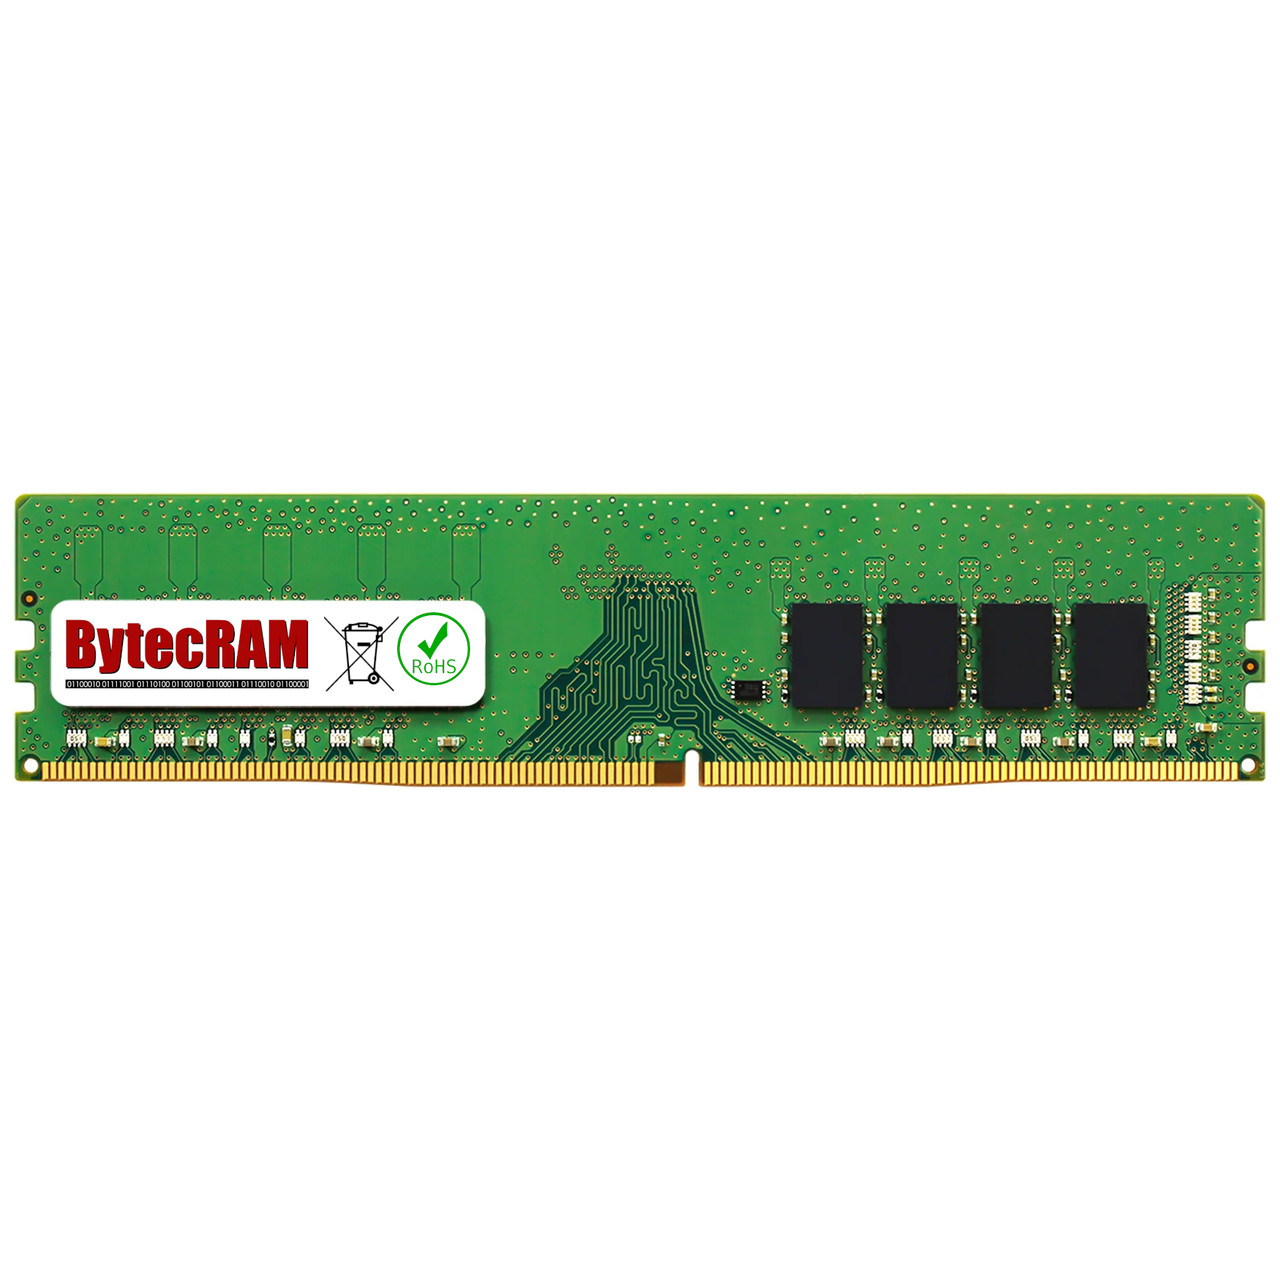 eBay*4GB Lenovo Lenovo S510 DDR4 2133MHz UDIMM Memory RAM Upgrade